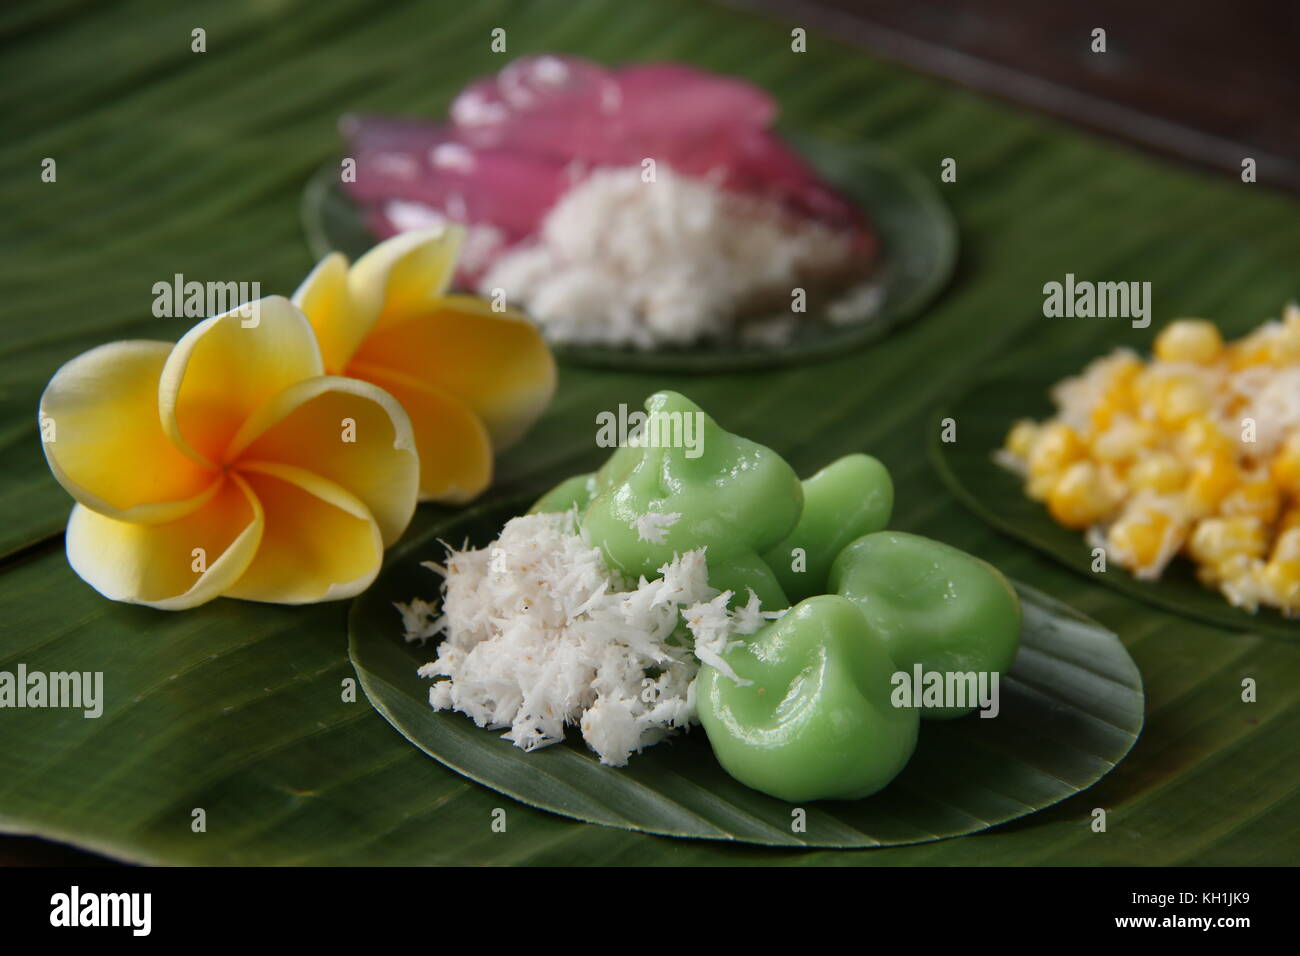 Jaja klepon, stile balinese tradizionale snack di pandanus riso glutinoso sfere riempiti con palm zucchero, servito con noce di cocco grattugiato Foto Stock